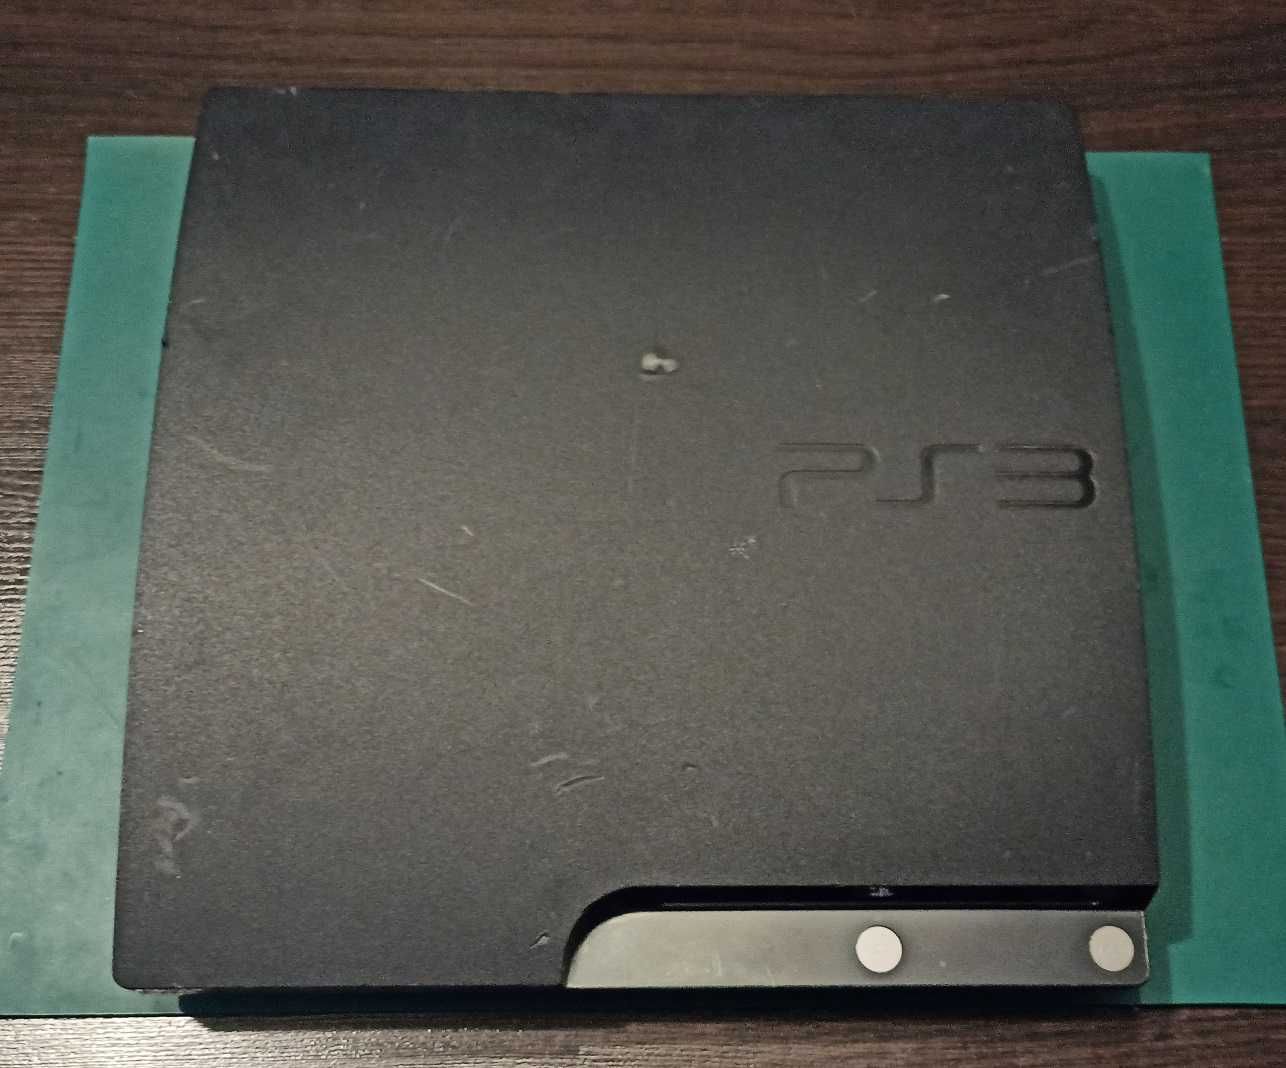 Konsola PS3 Slim uszkodzona